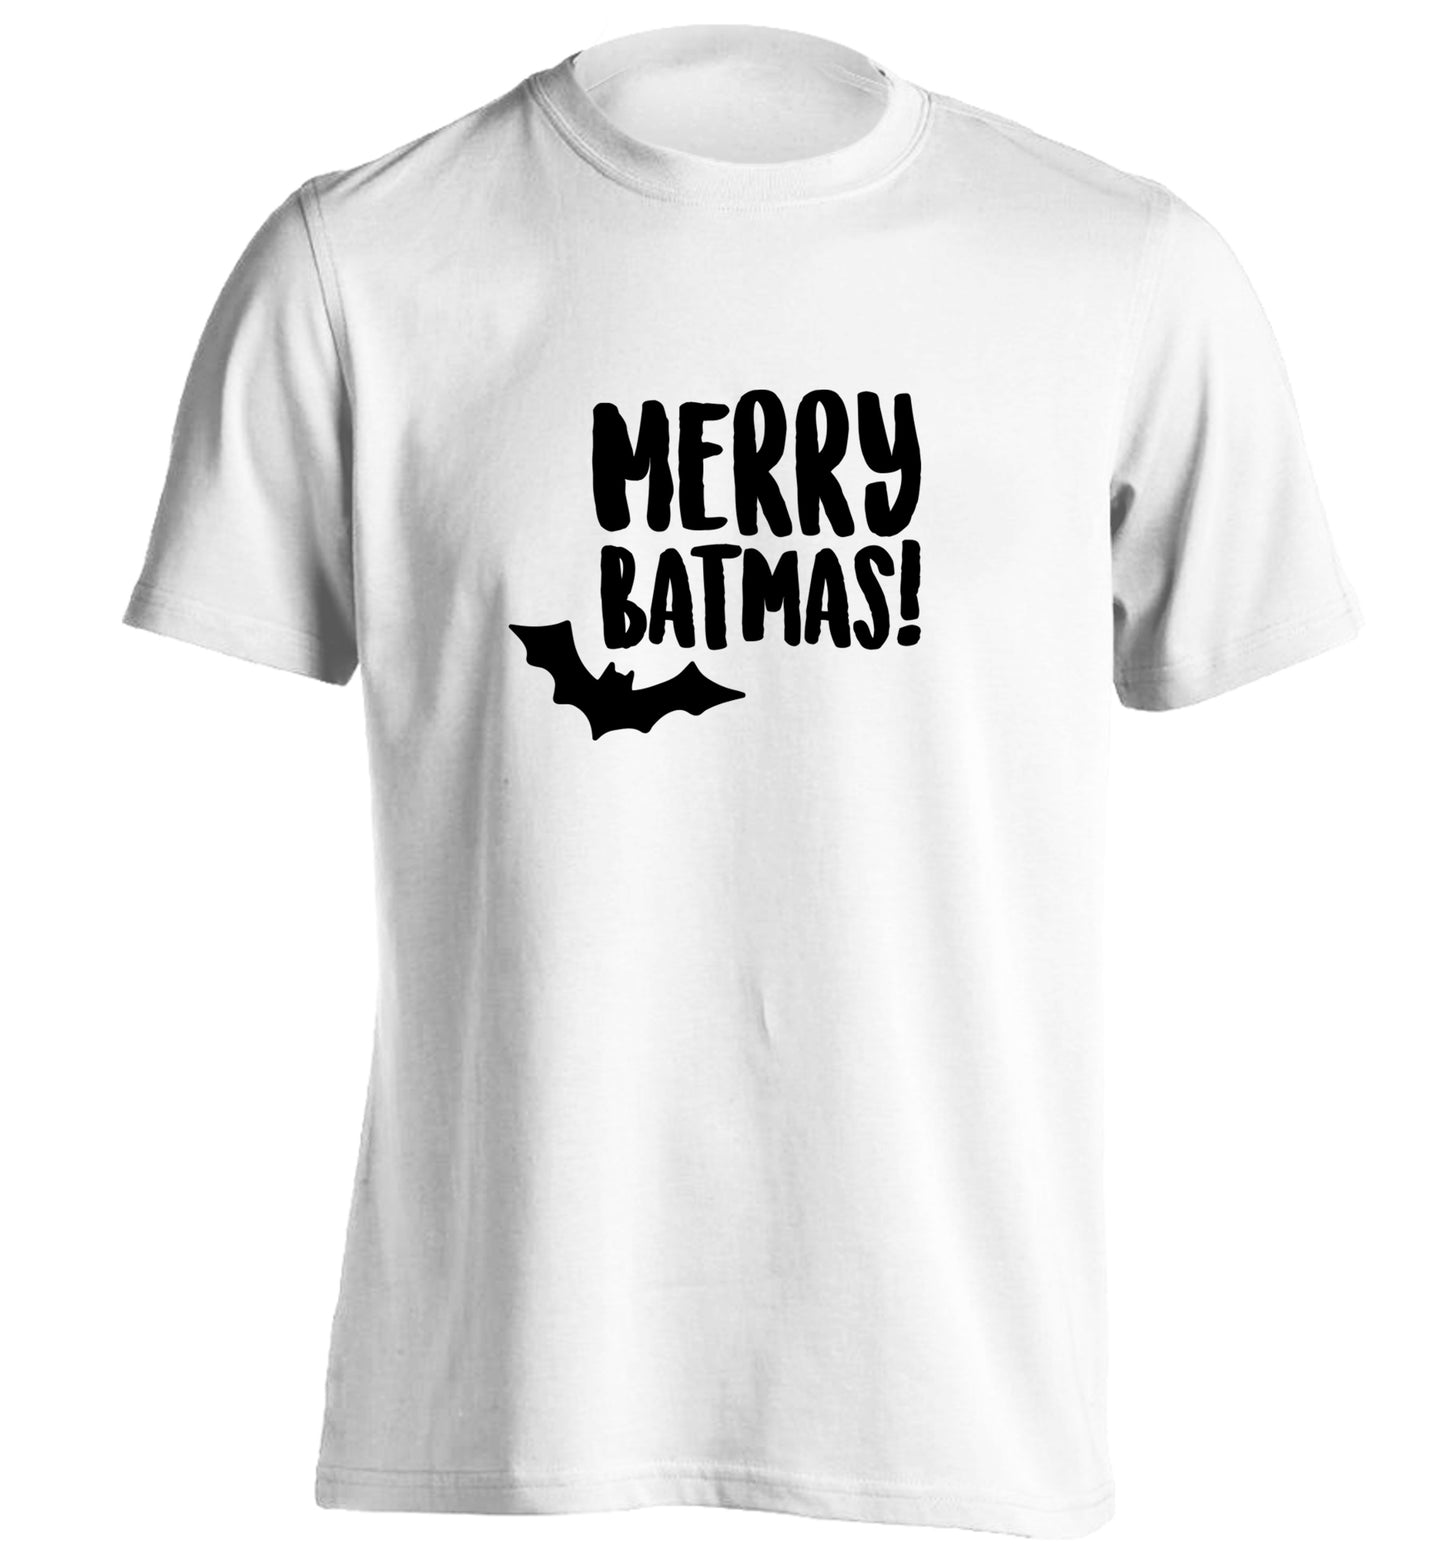 Merry Batmas adults unisex white Tshirt 2XL